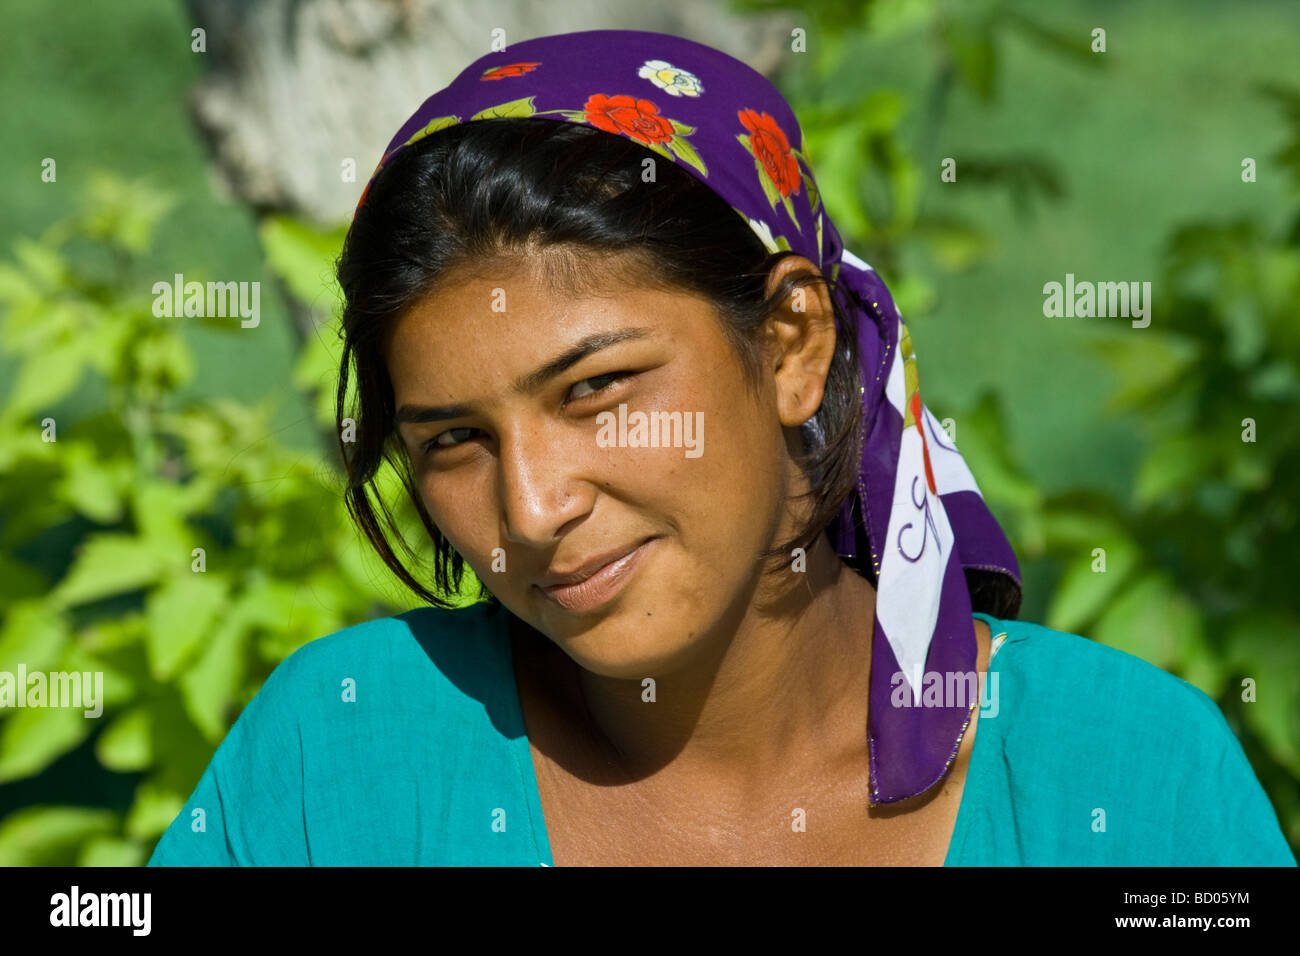 Young Uzbek Woman in Bukhara Uzbekistan Stock Photo - Alamy